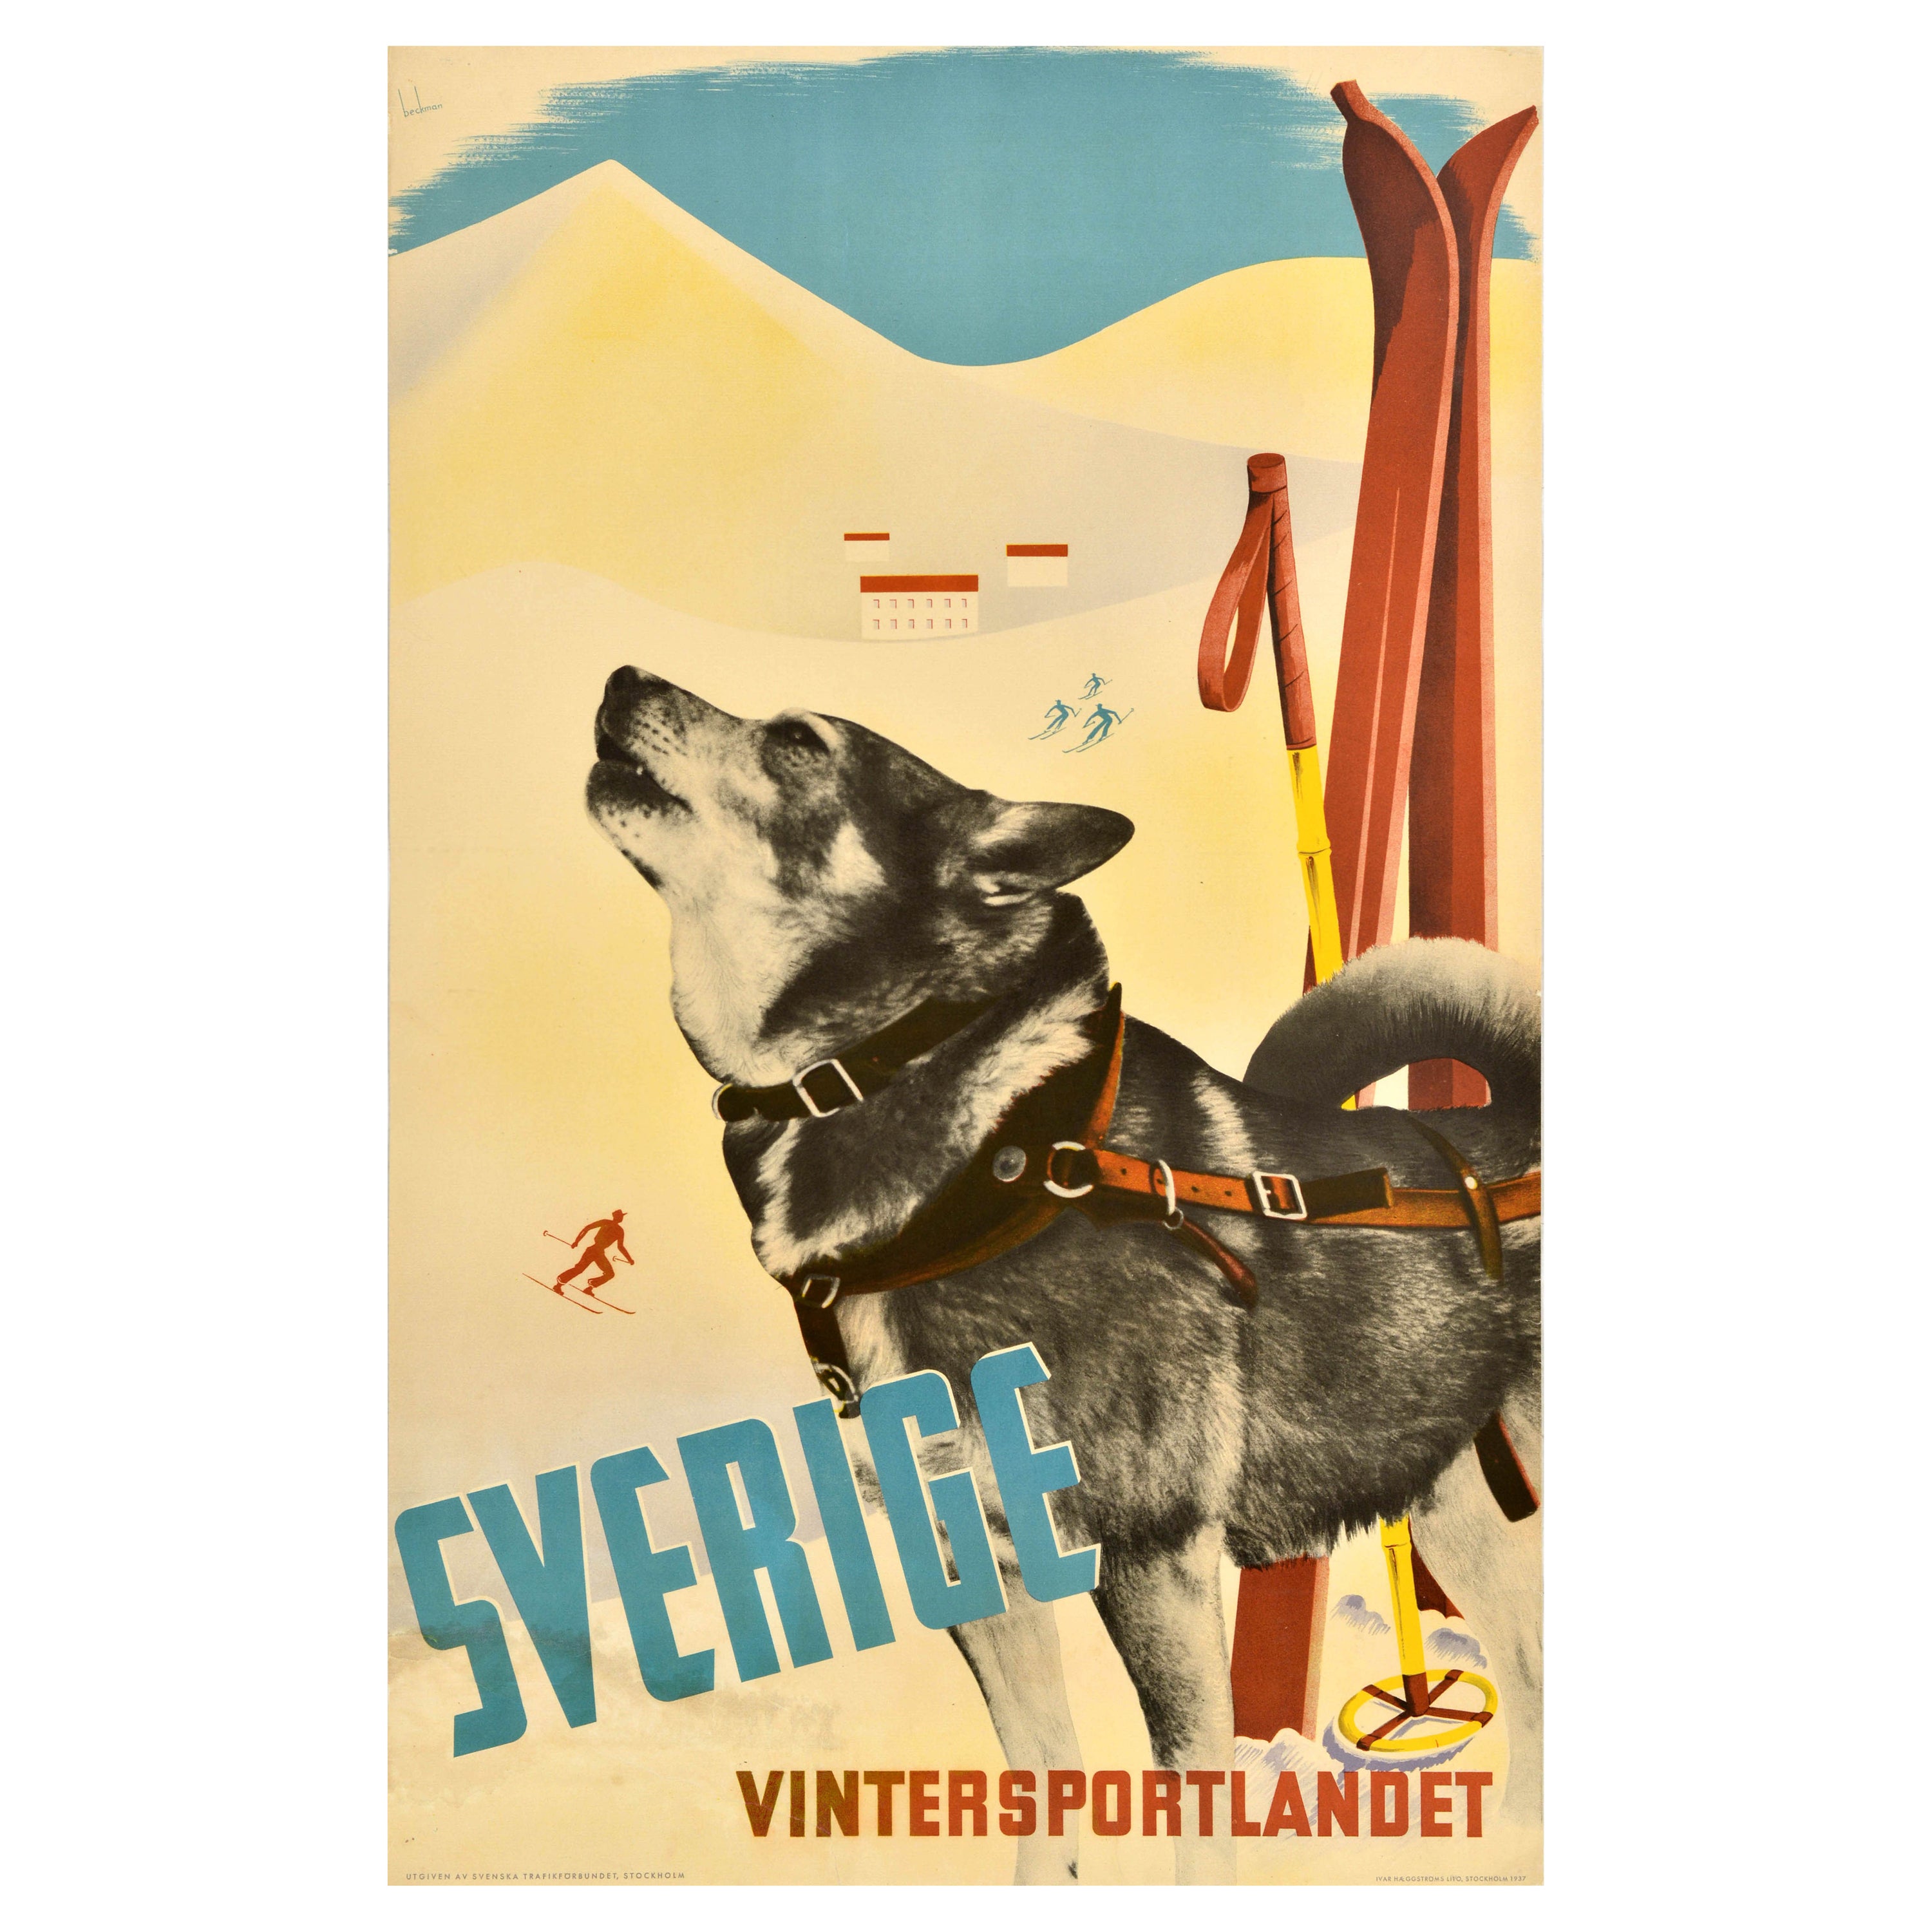 Original Vintage Ski Poster Sverige Vintersportlandet Sweden Winter Sports Dog For Sale